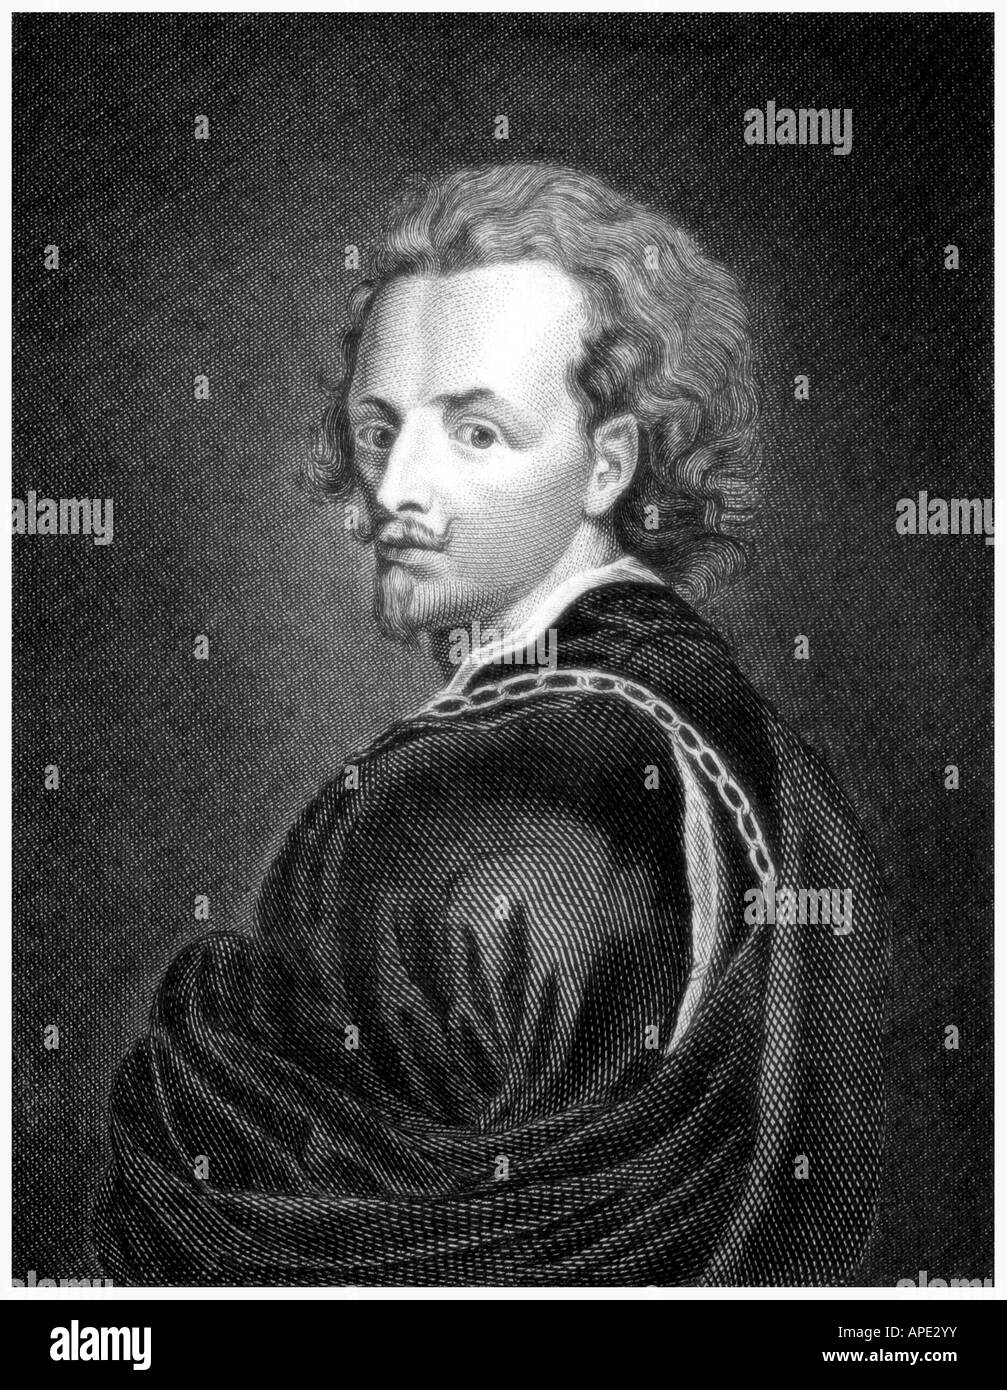 Dyck, Anthony van, 22.3.1599 - 9.12.1641, pittore fiammingo, ritratto, incisione, Germania, secolo XIX, artista del diritto d'autore non deve essere cancellata Foto Stock